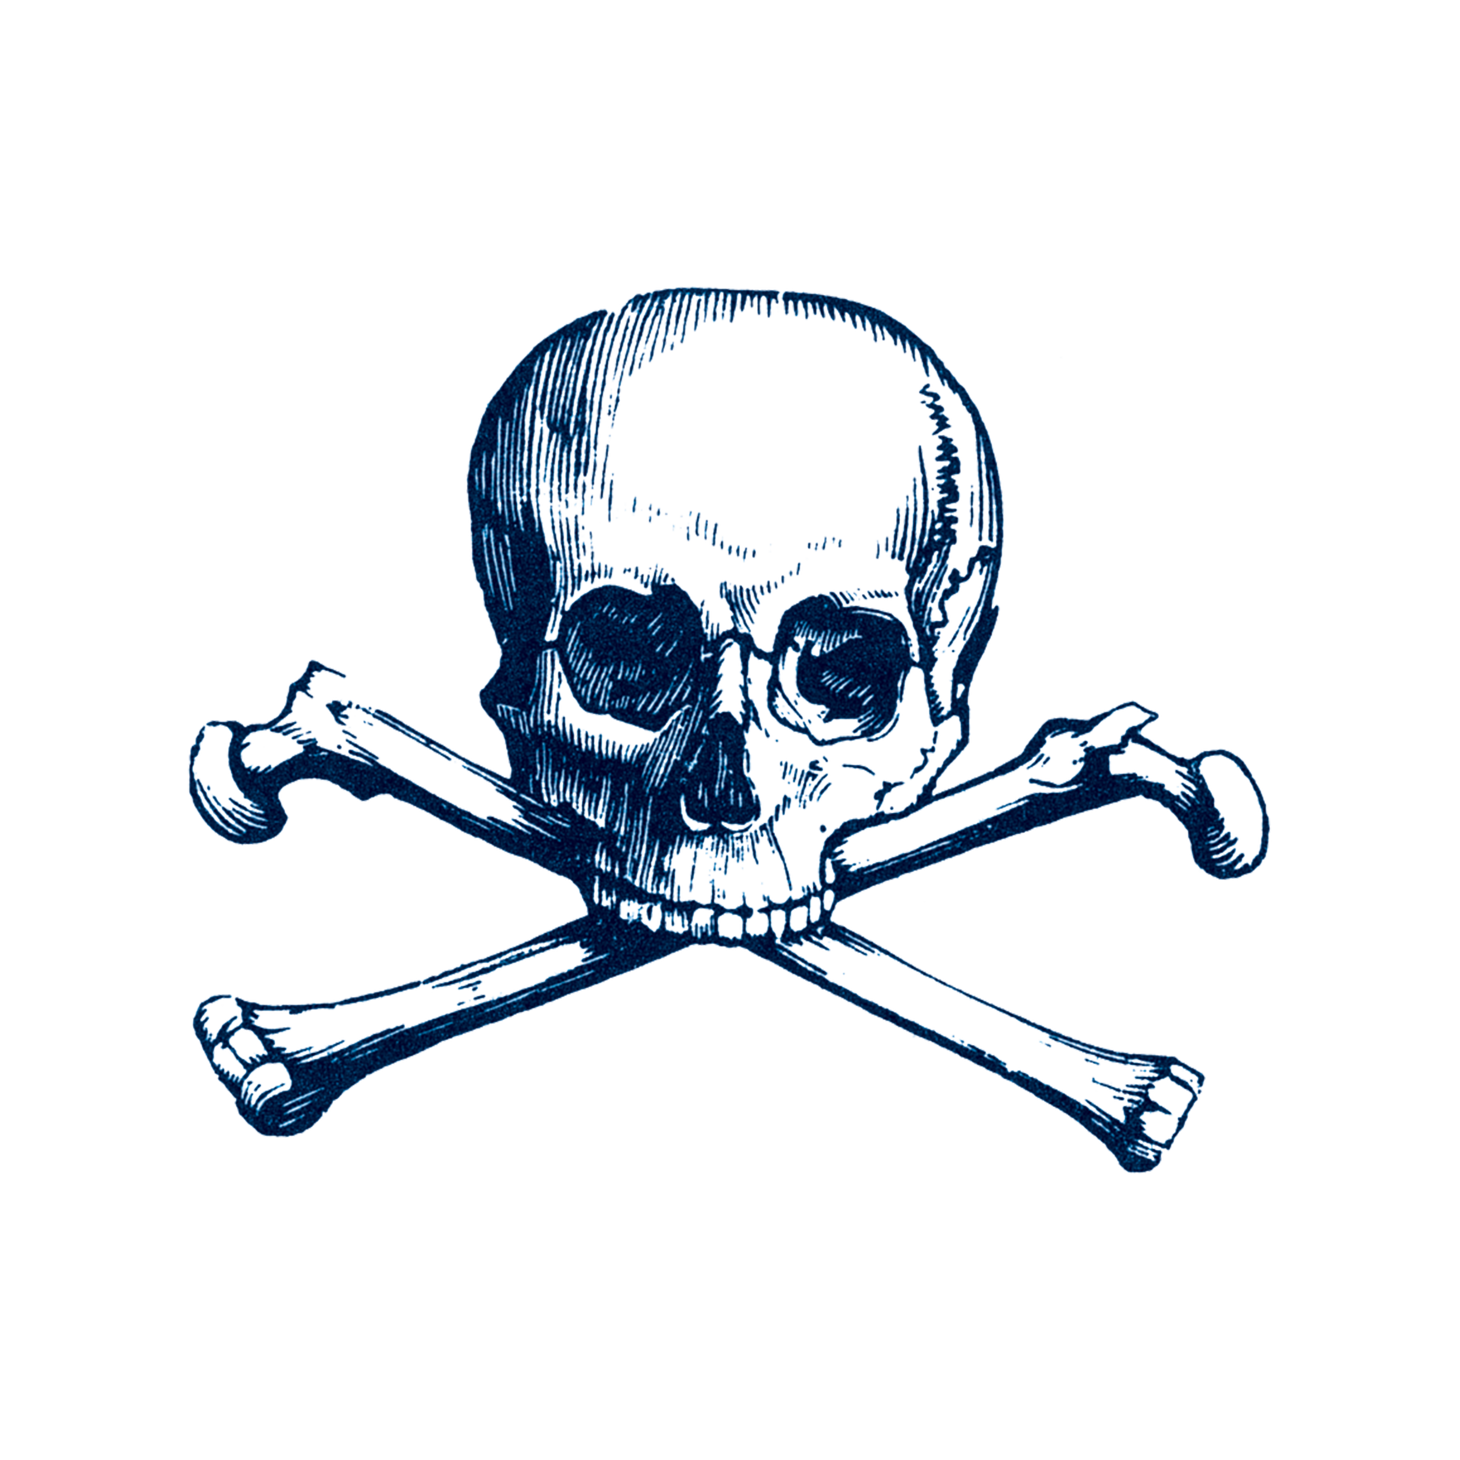 100,000 Skull tattoo logo Vector Images | Depositphotos